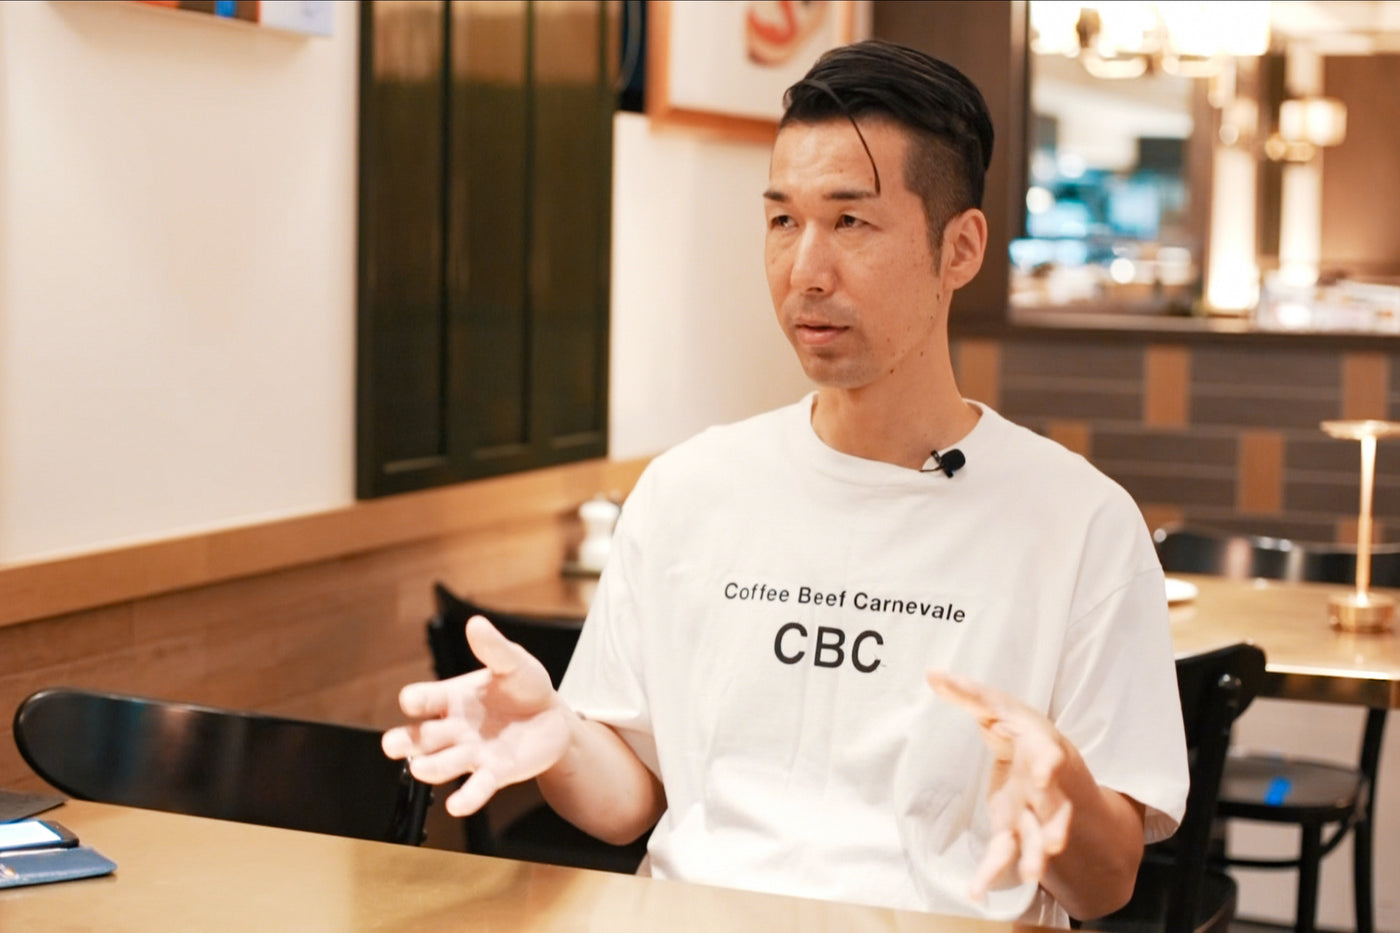 表参道"CBC"インタビュー『お客様との共感が生まれた瞬間』が私たちの喜び。/ TARROW TOKYO